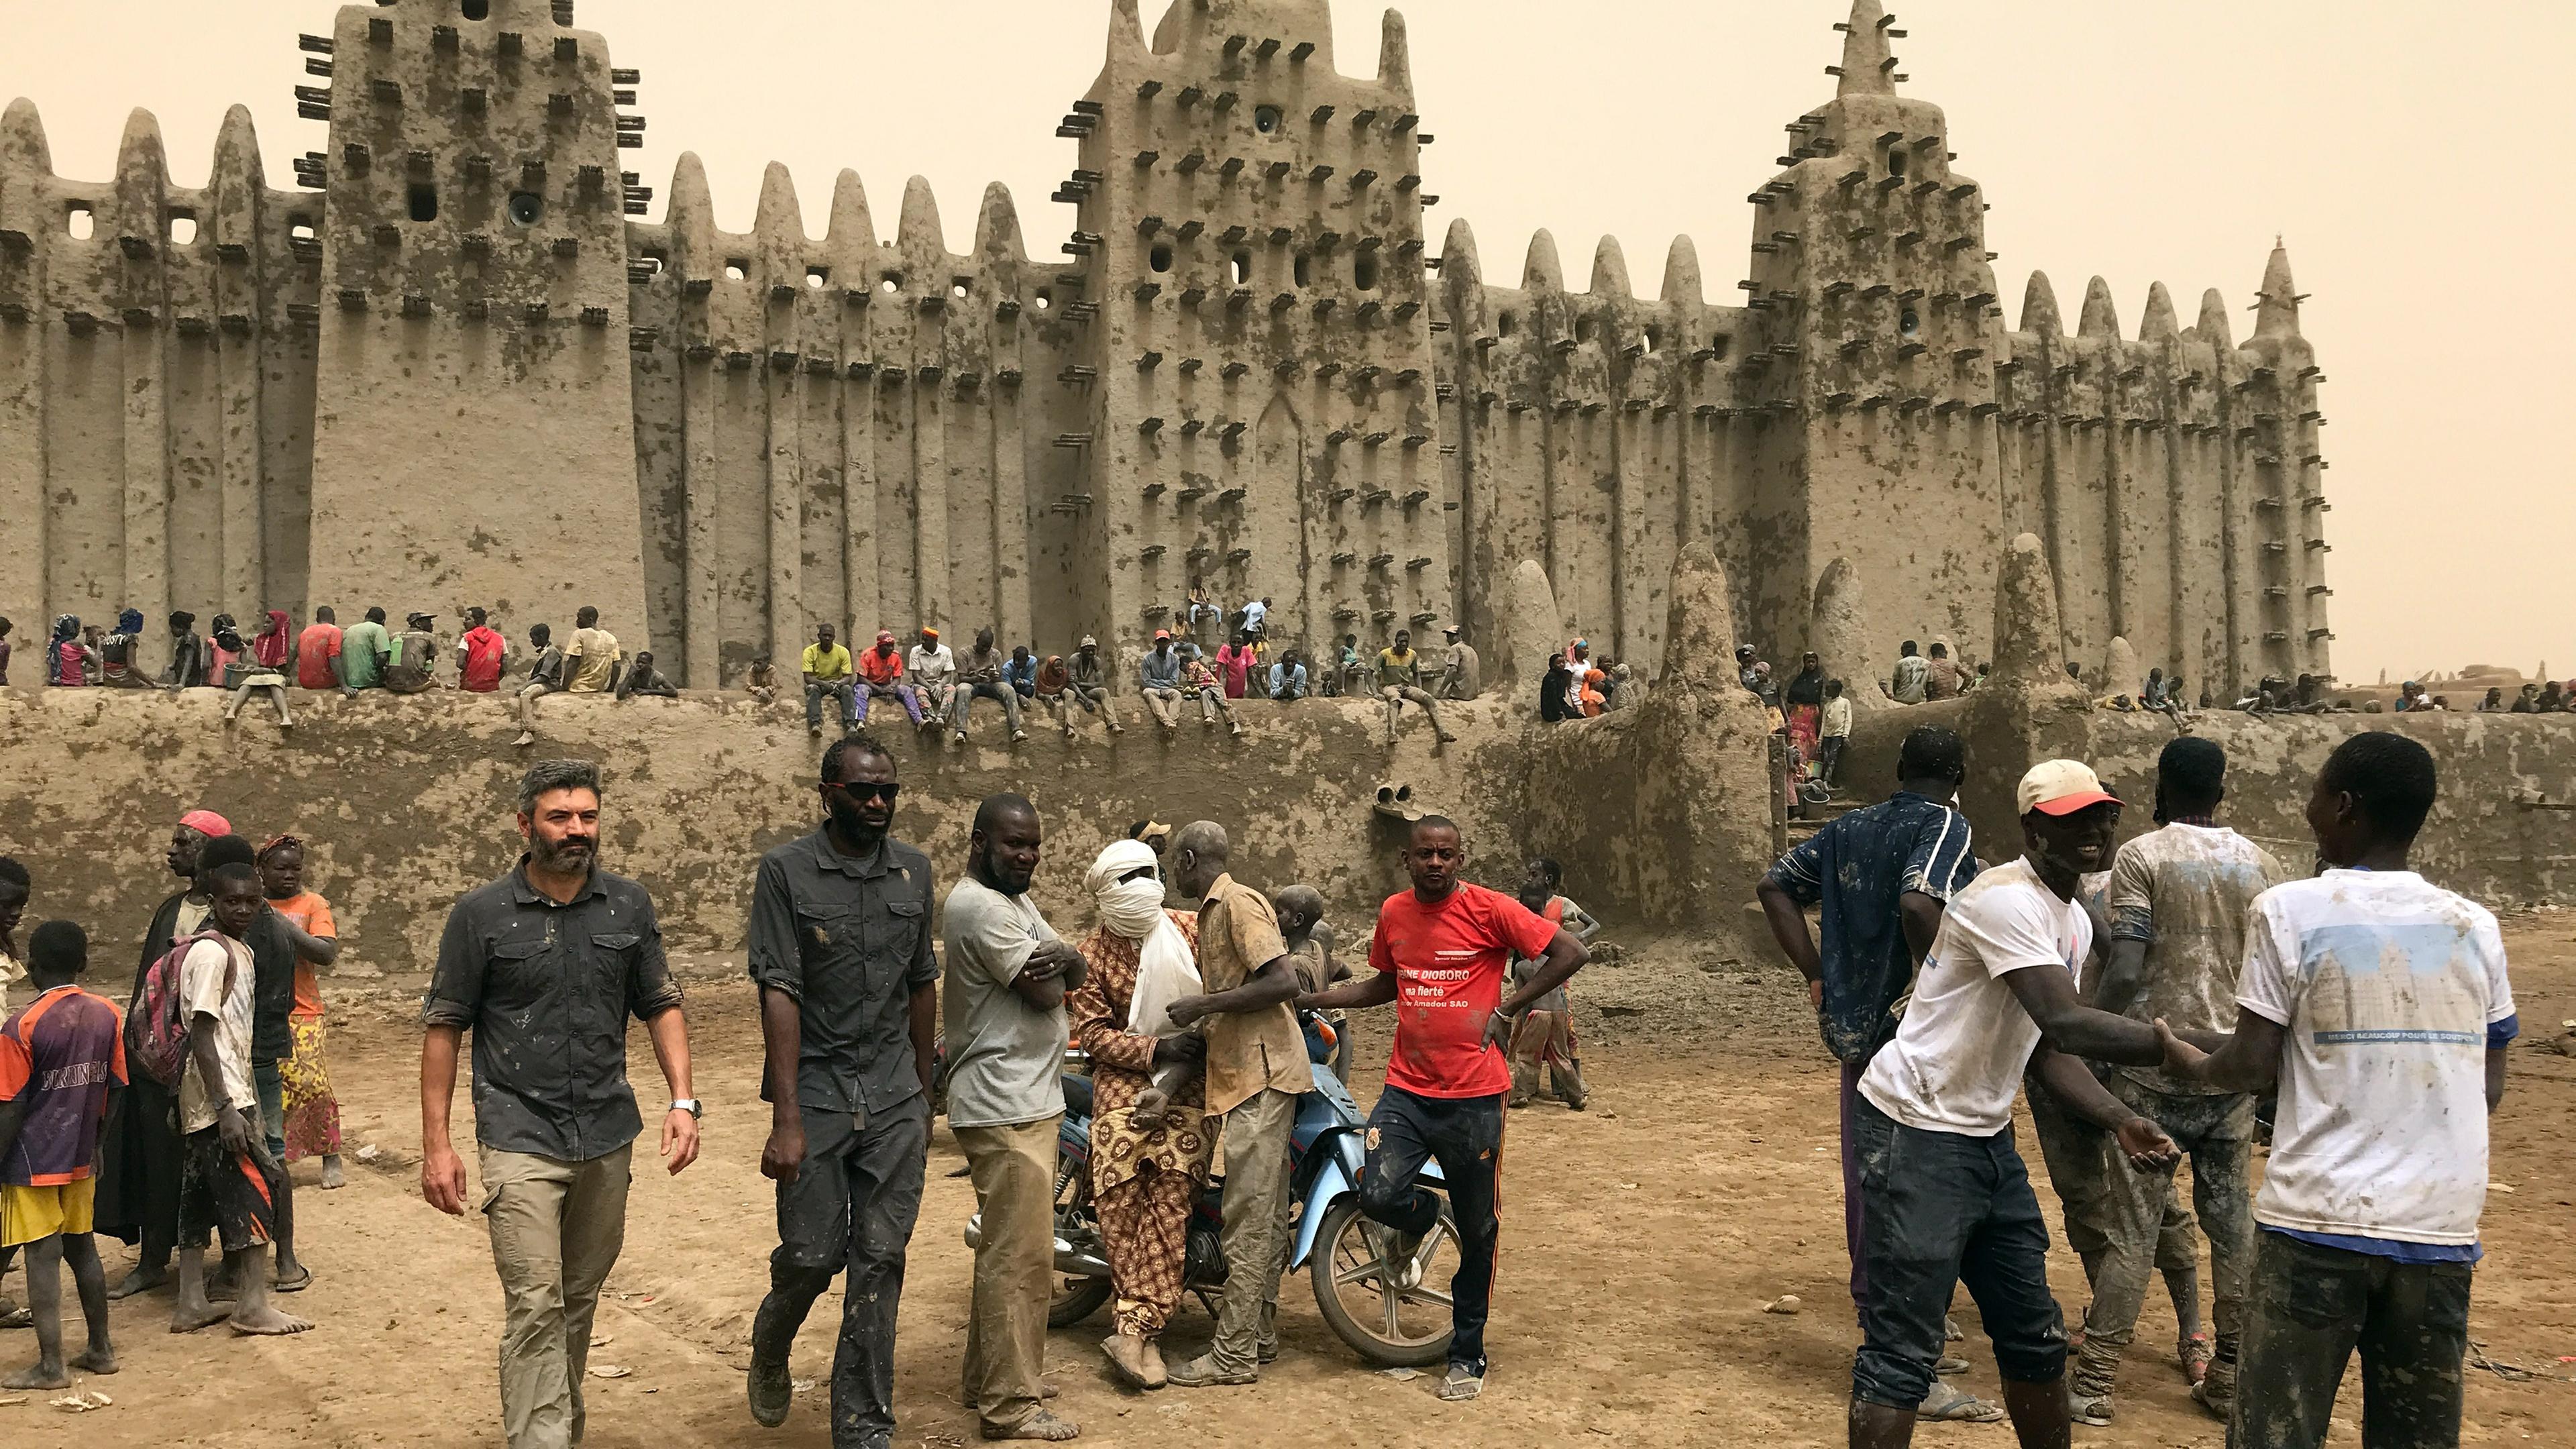 Die imposante Lehmfassade der Moschee von Djenné. Auf der Mauer davor sitzen dichtgedrängt Menschen. Im Vordergrund stehen mehrere Männer.